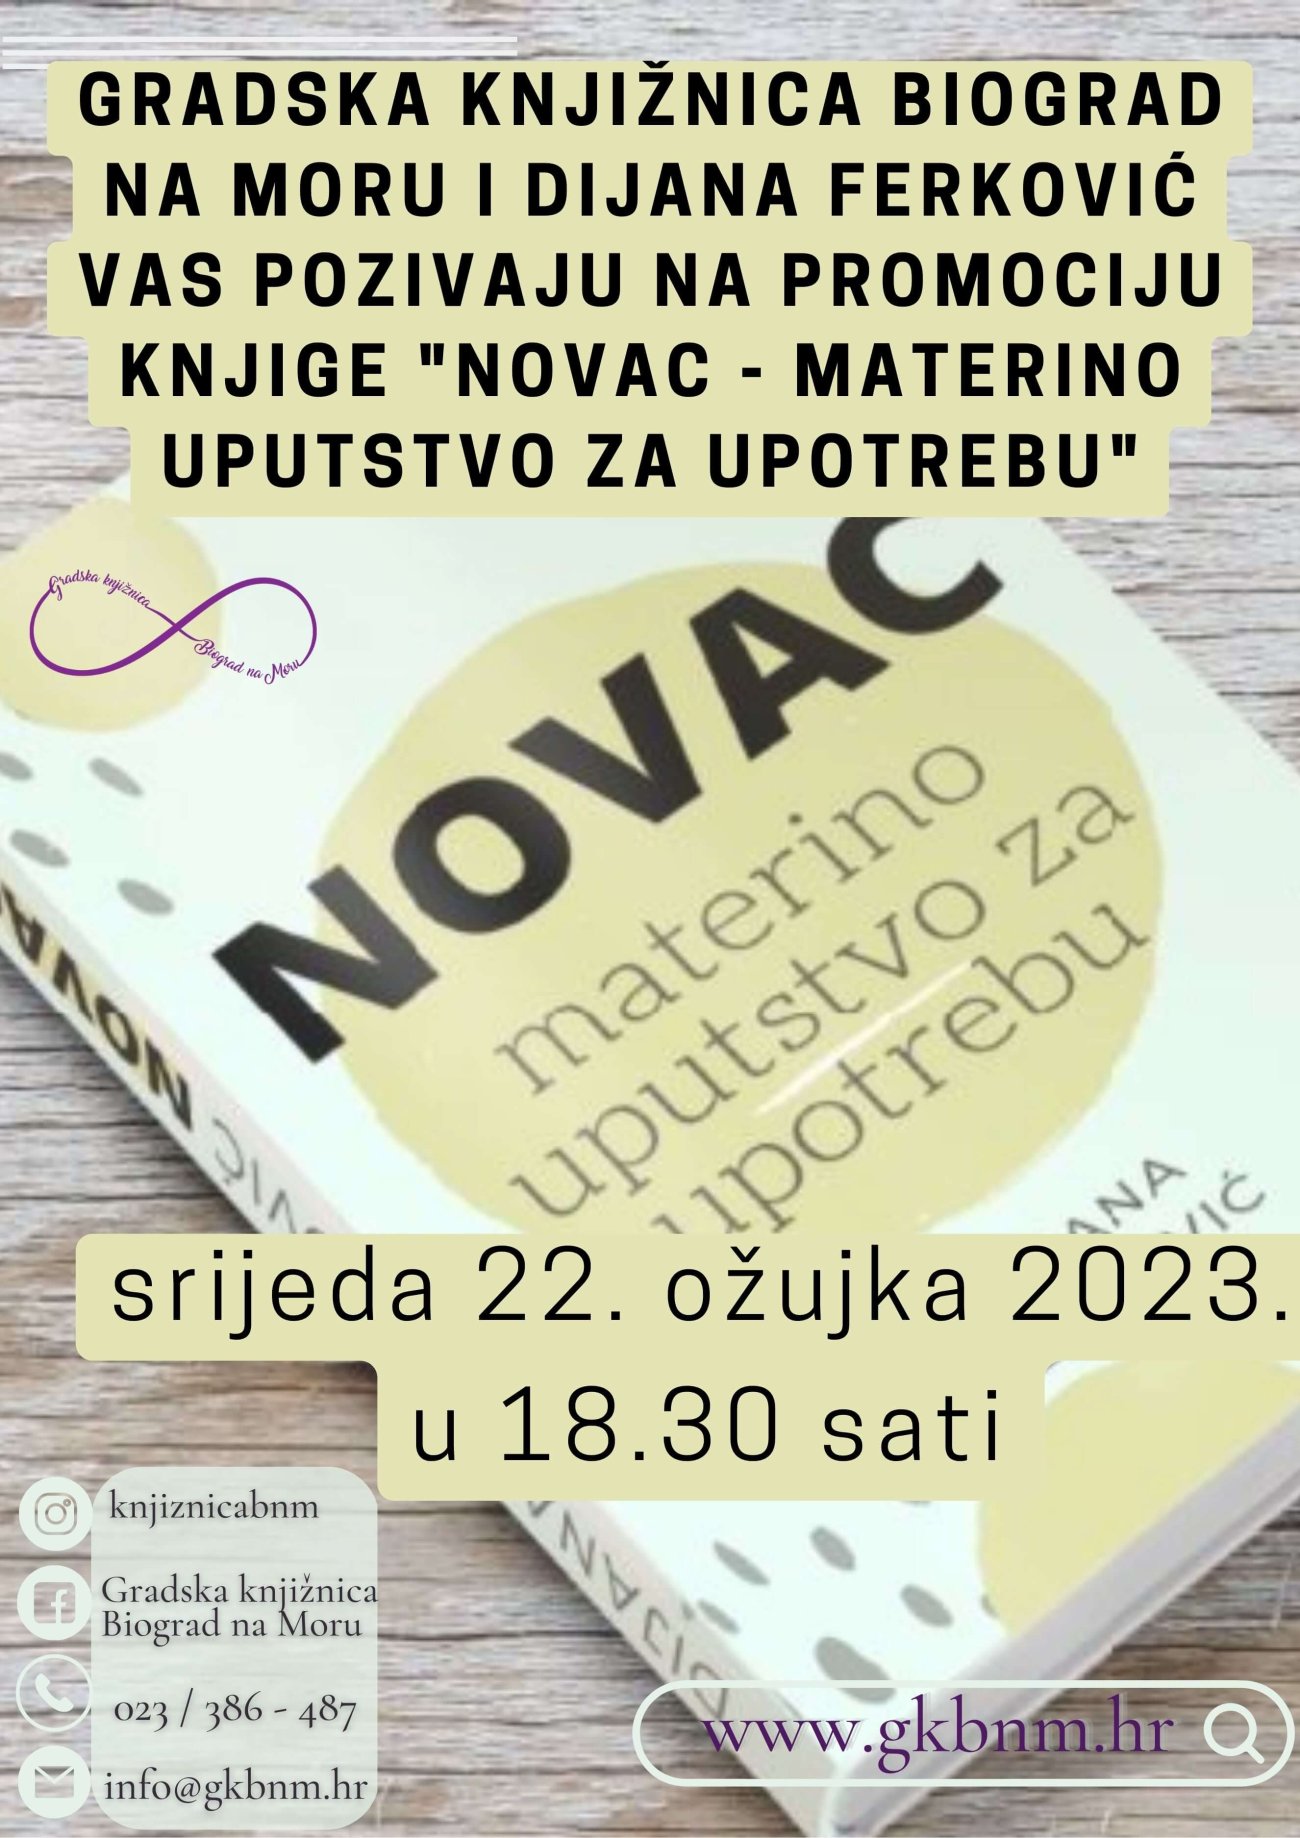 Gradska knjižnica Biograd na Moru i Dijana Ferković vas pozivaju na promociju knjige 